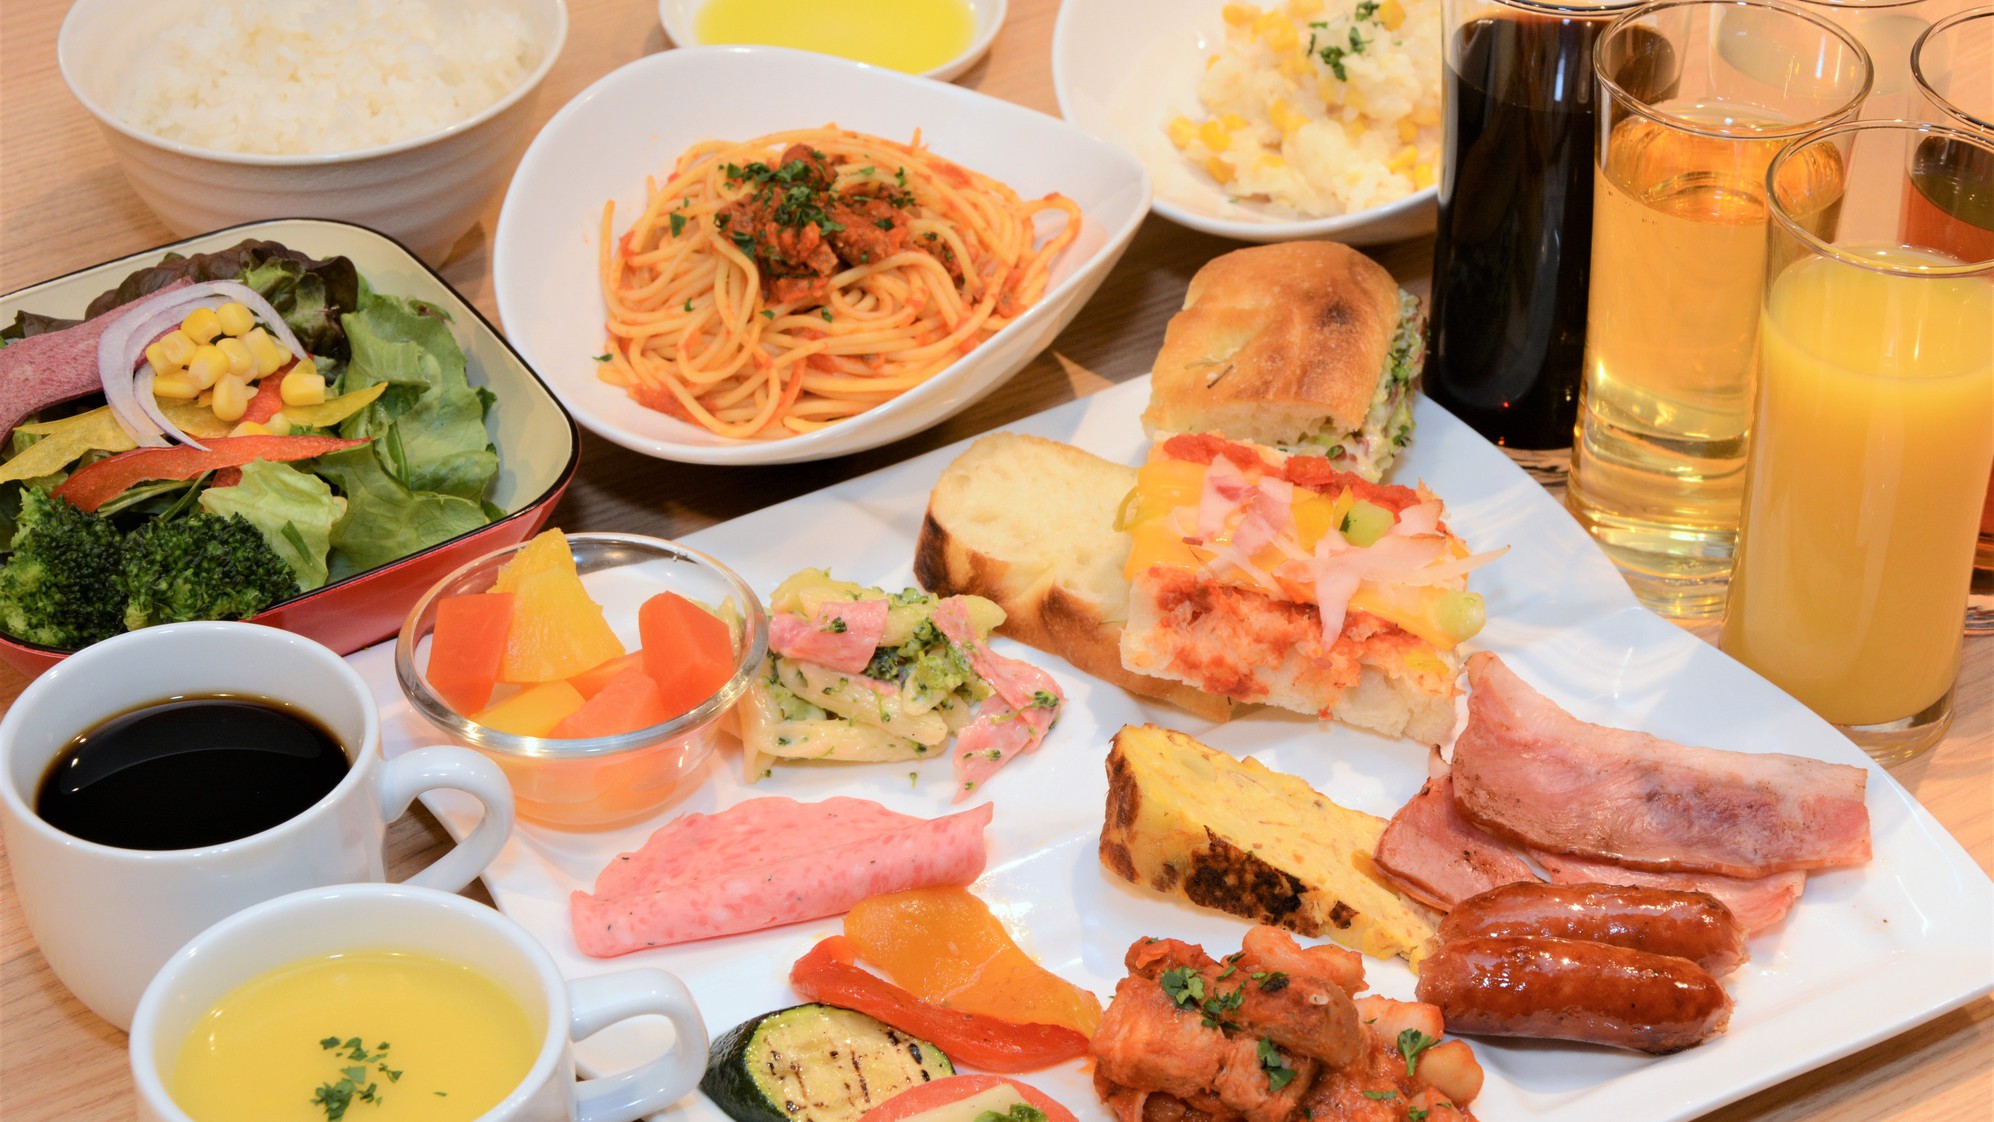 【食事】南イタリア料理専門店の朝食を